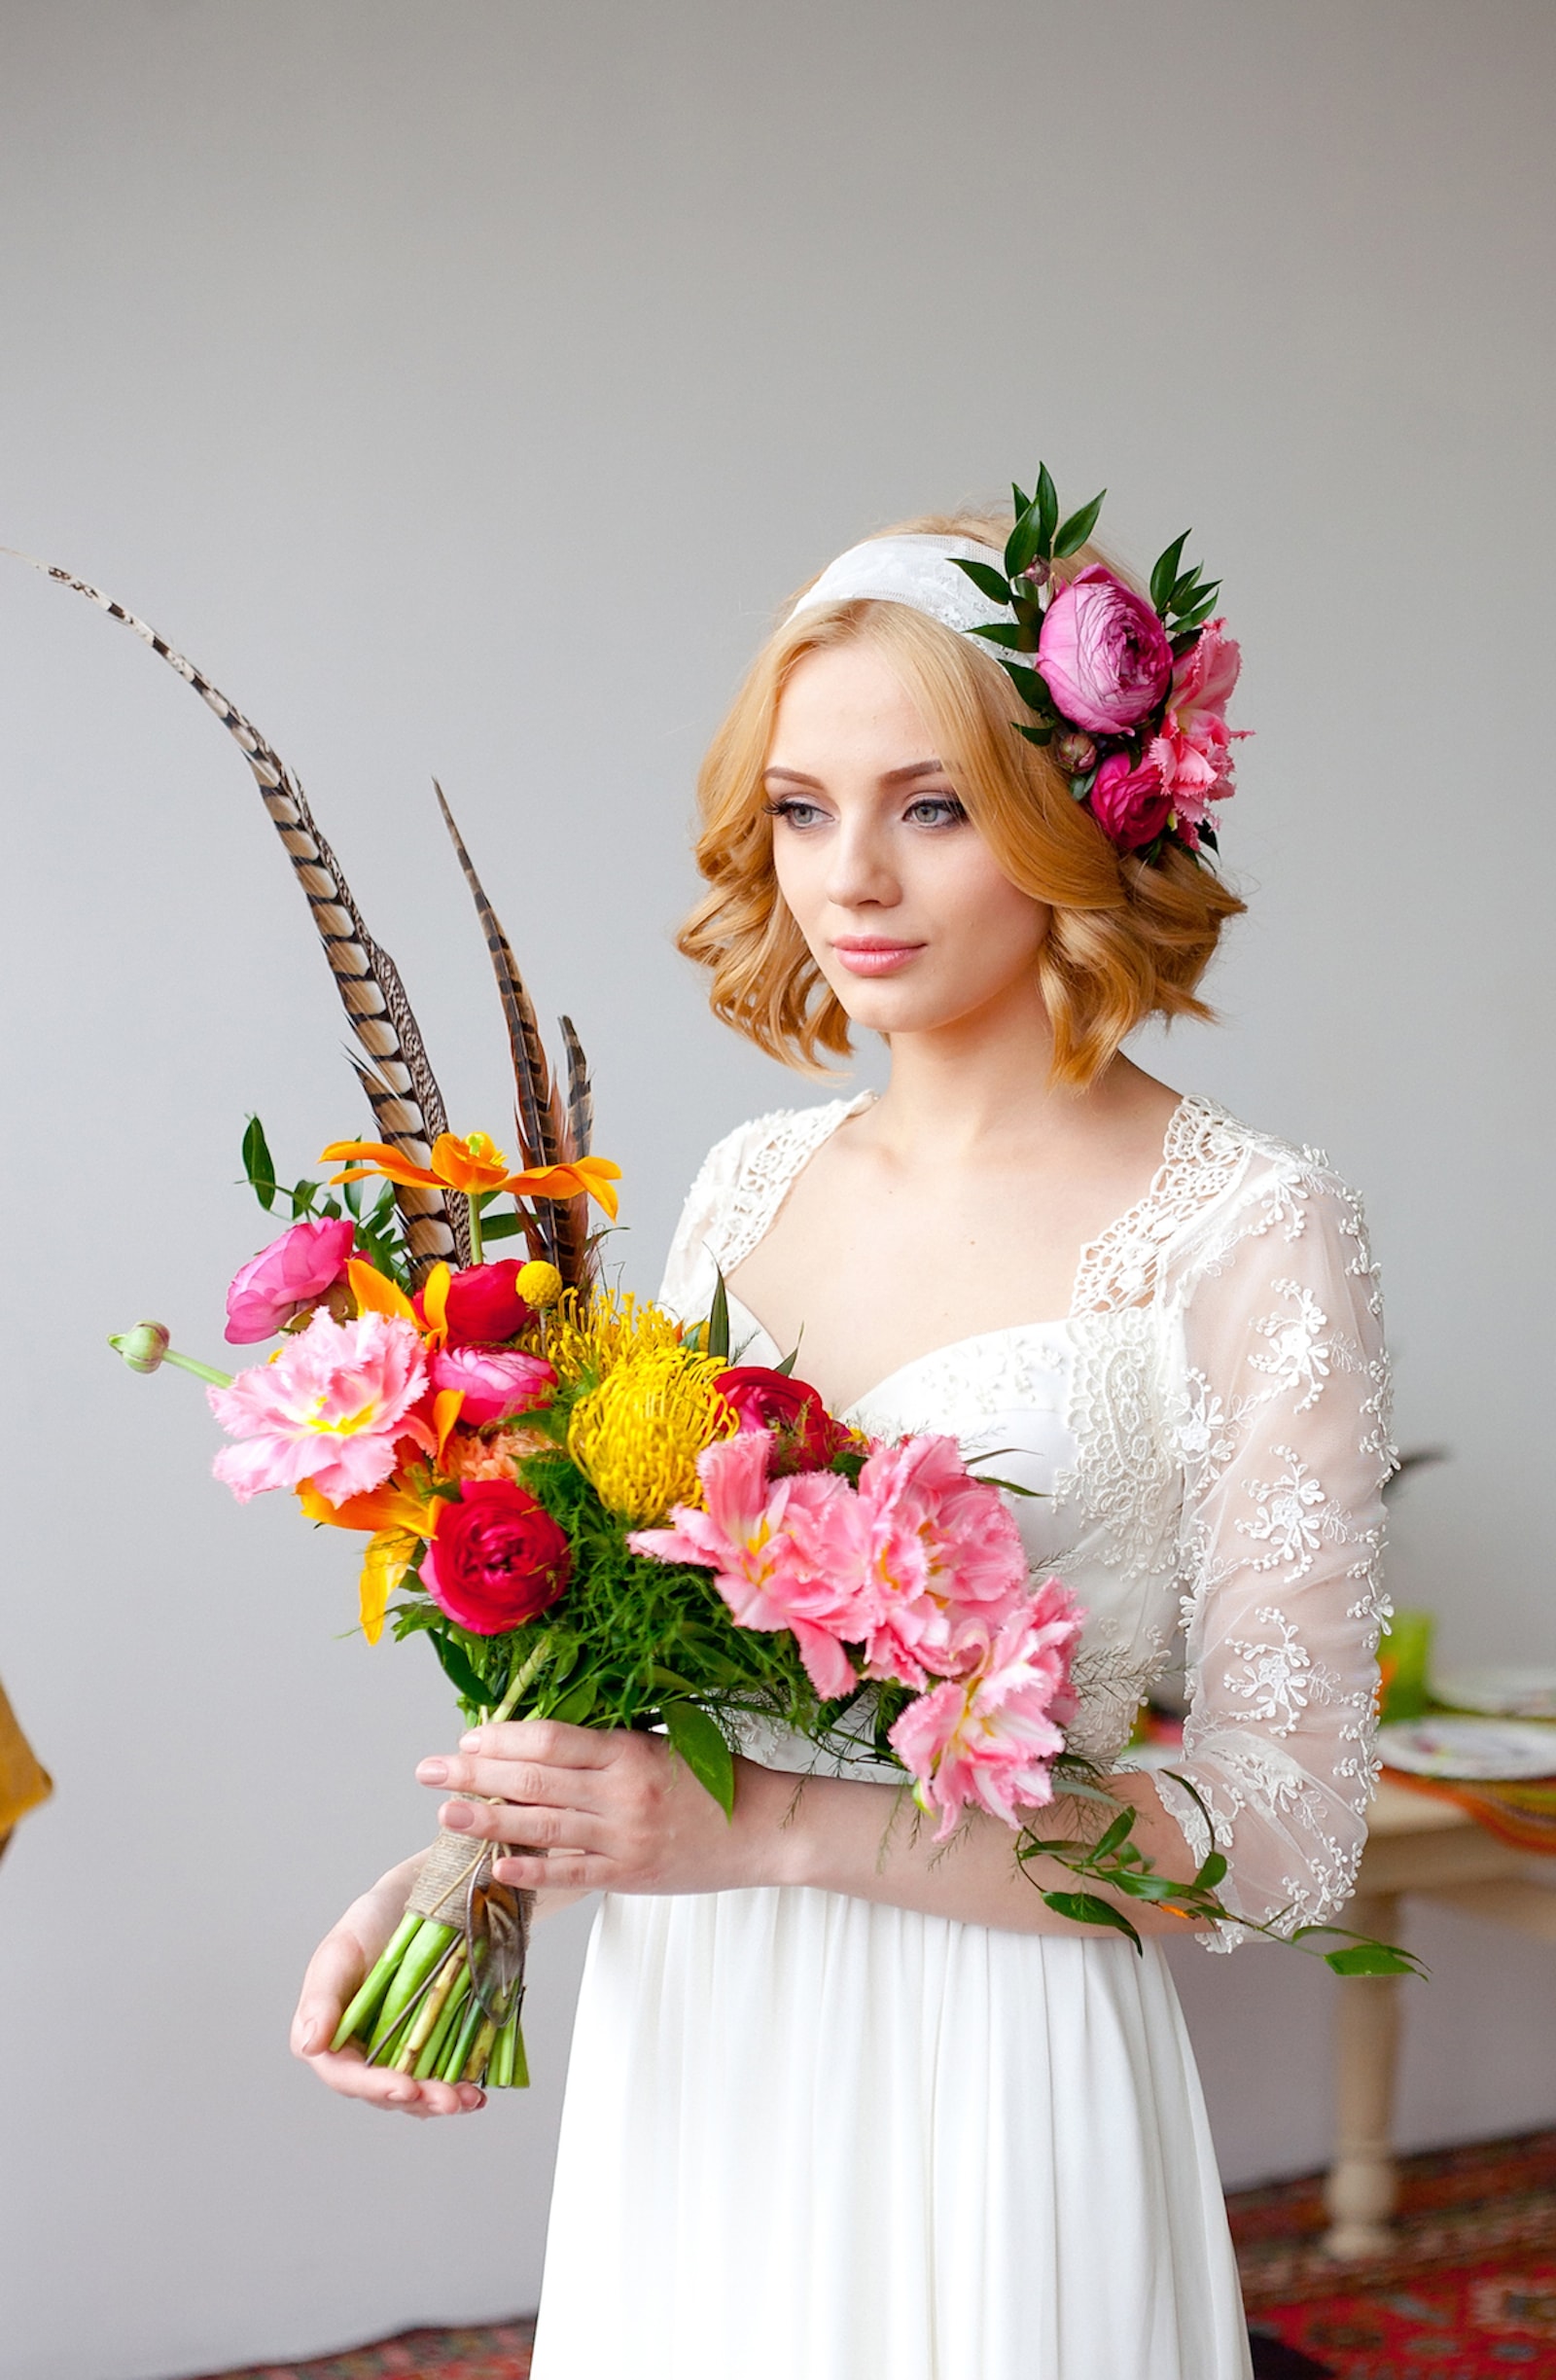 Красивый образ невесты с живыми цветами